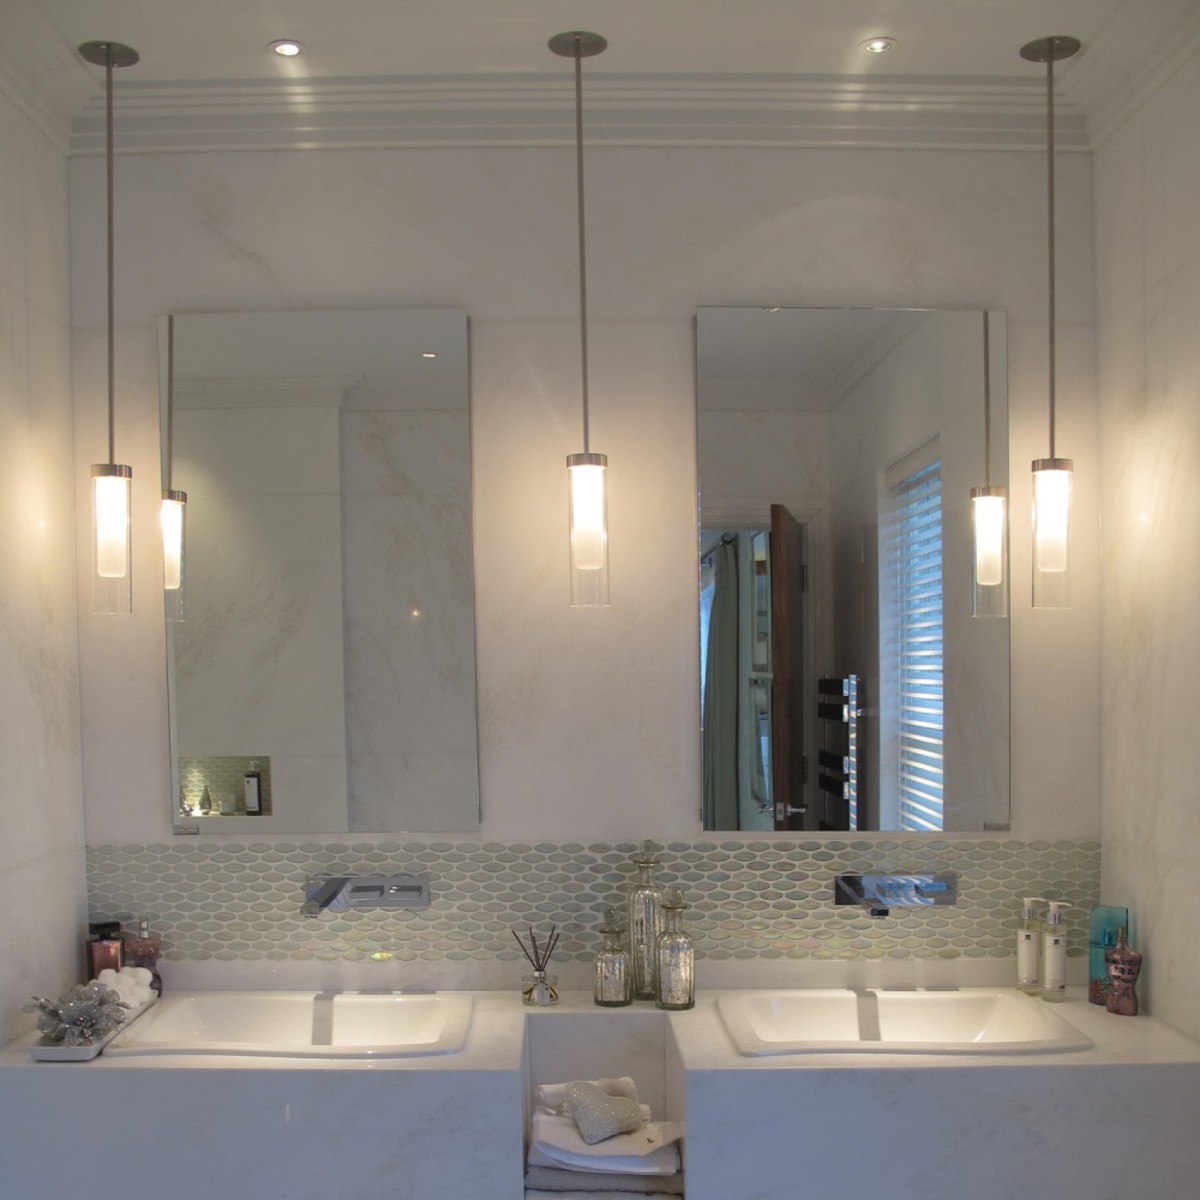 Pendant Lighting, How Low Should Pendant Lights Hang Over Bathroom Vanity